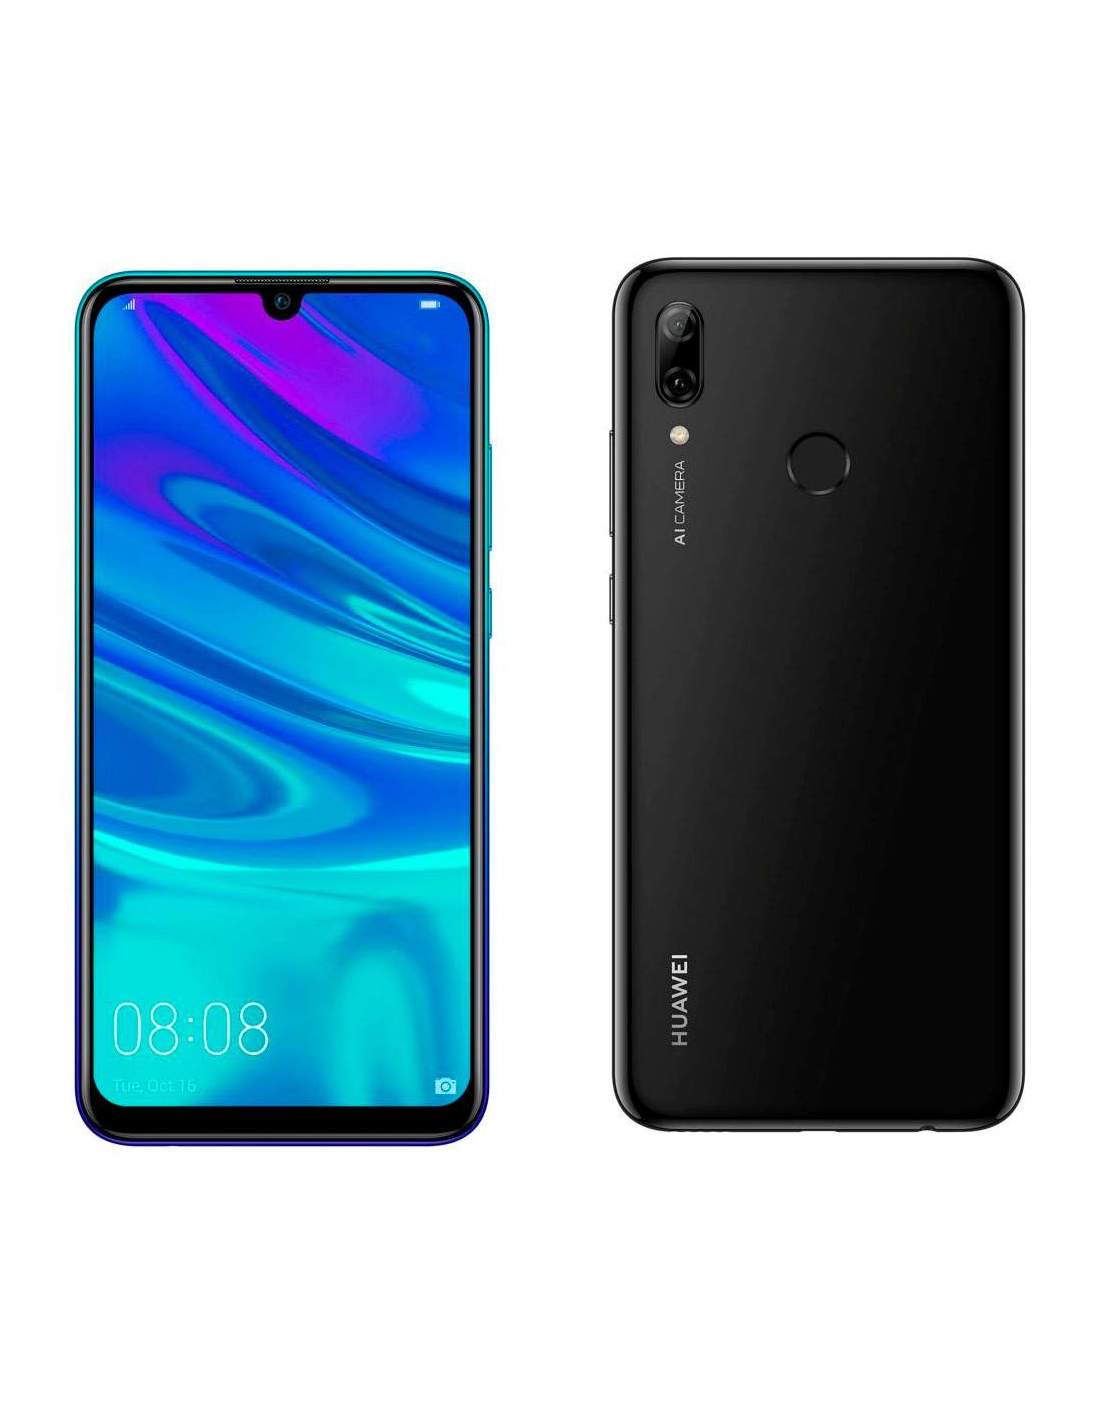 Huawei 3 32. Huawei p Smart 2019. Huawei p Smart 2019 32gb. Смартфон Huawei p Smart (2019) 3/32gb. Хуавей п смарт 2019 32 ГБ.